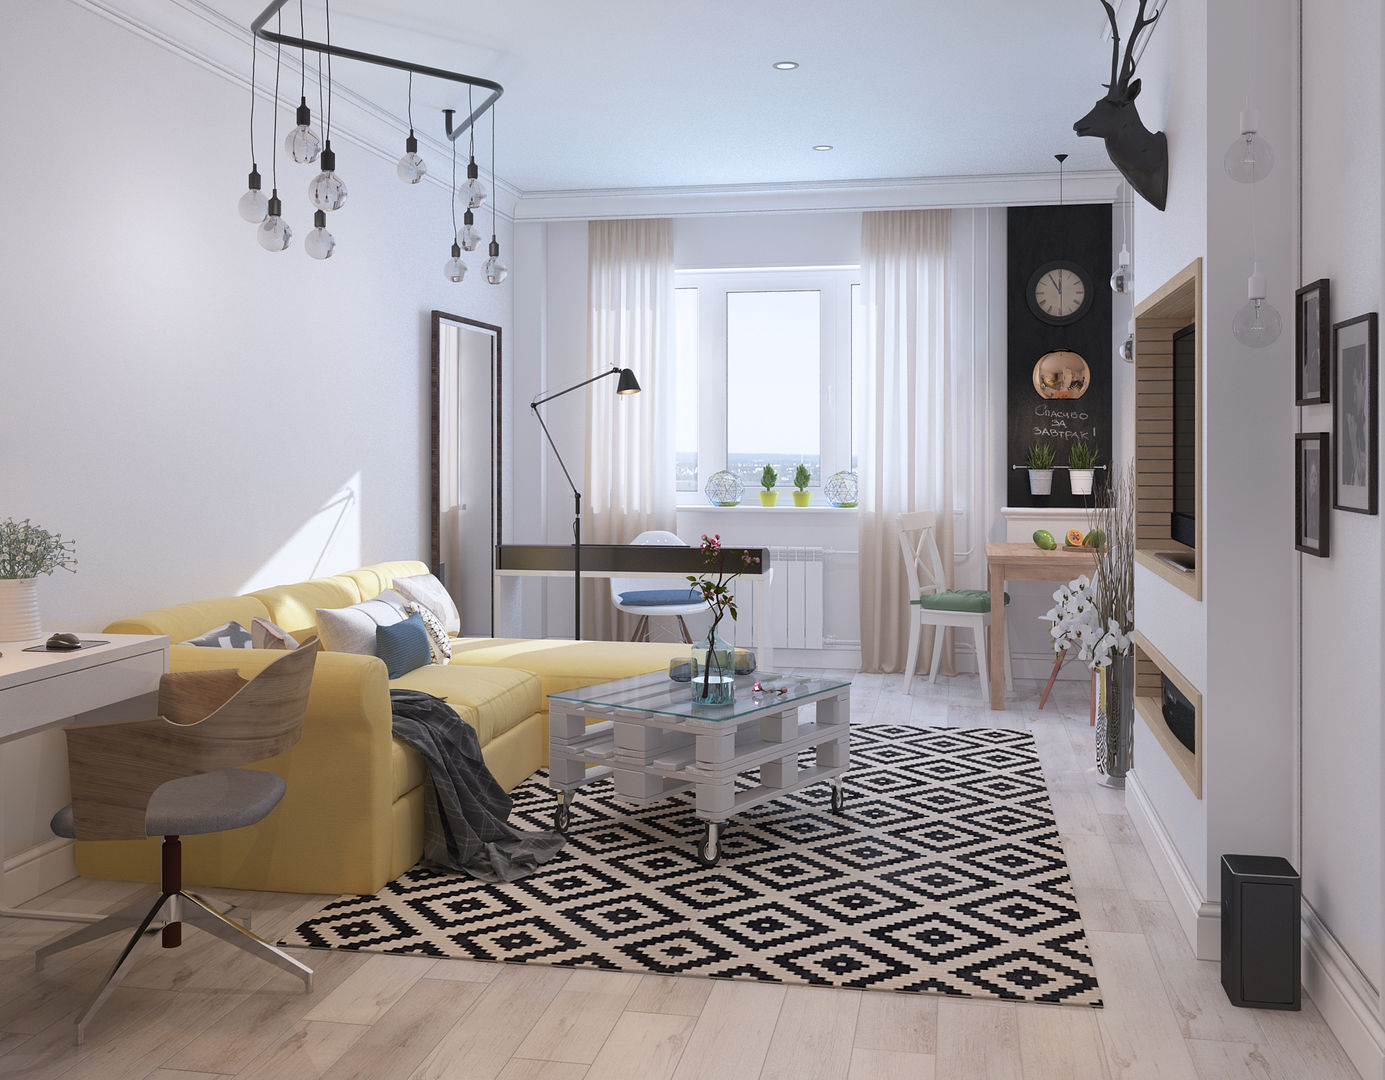 Визуализации Интерьера в скандинавском стиле, Alyona Musina Alyona Musina Living room